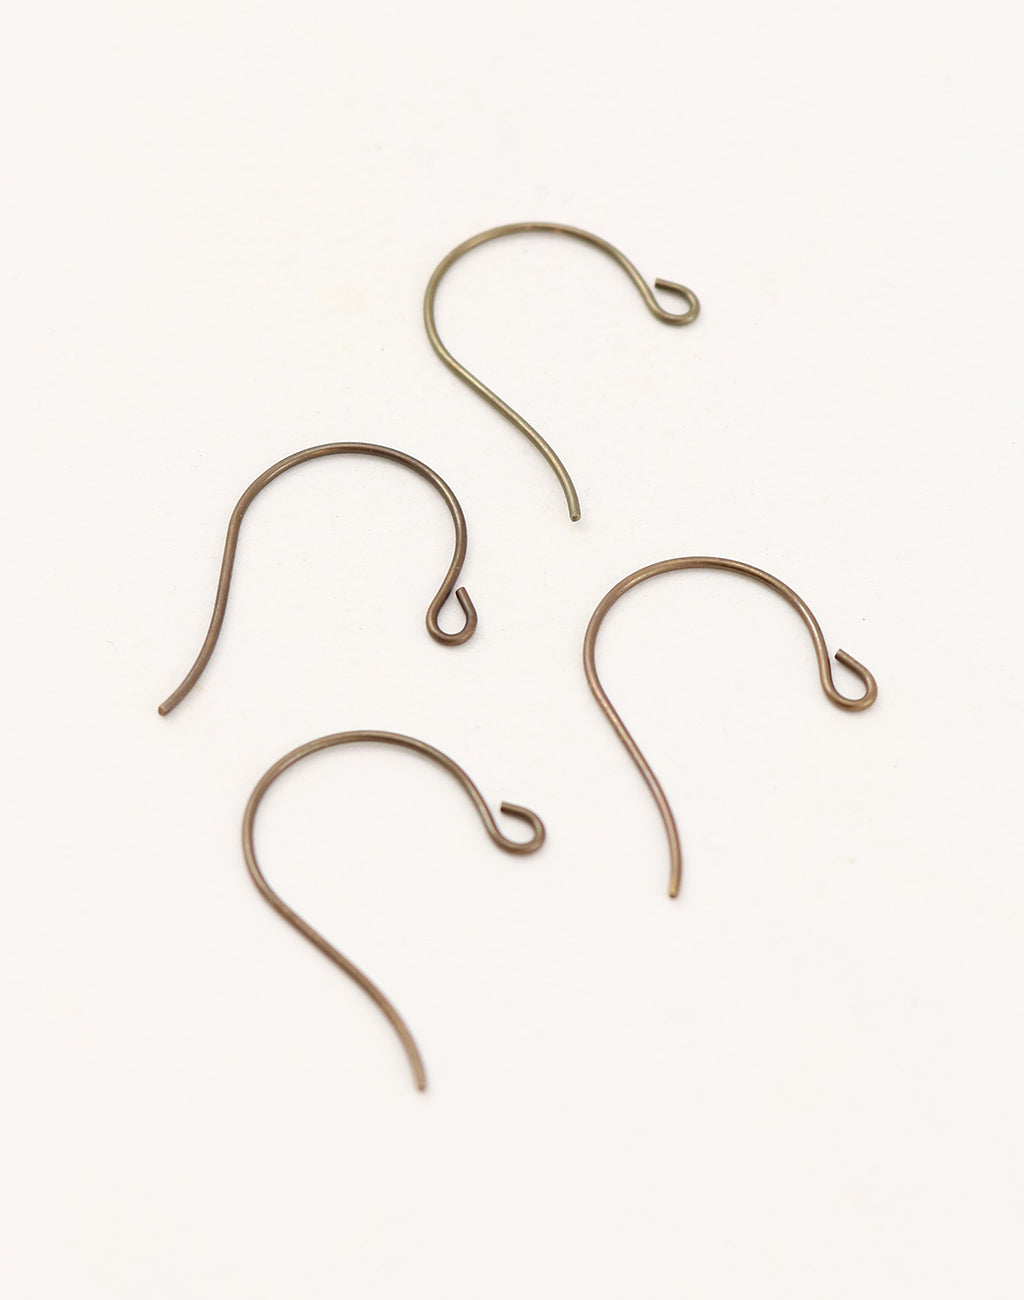 Stainless Steel Earring Hooks Jewelry Findings Ear Wire for